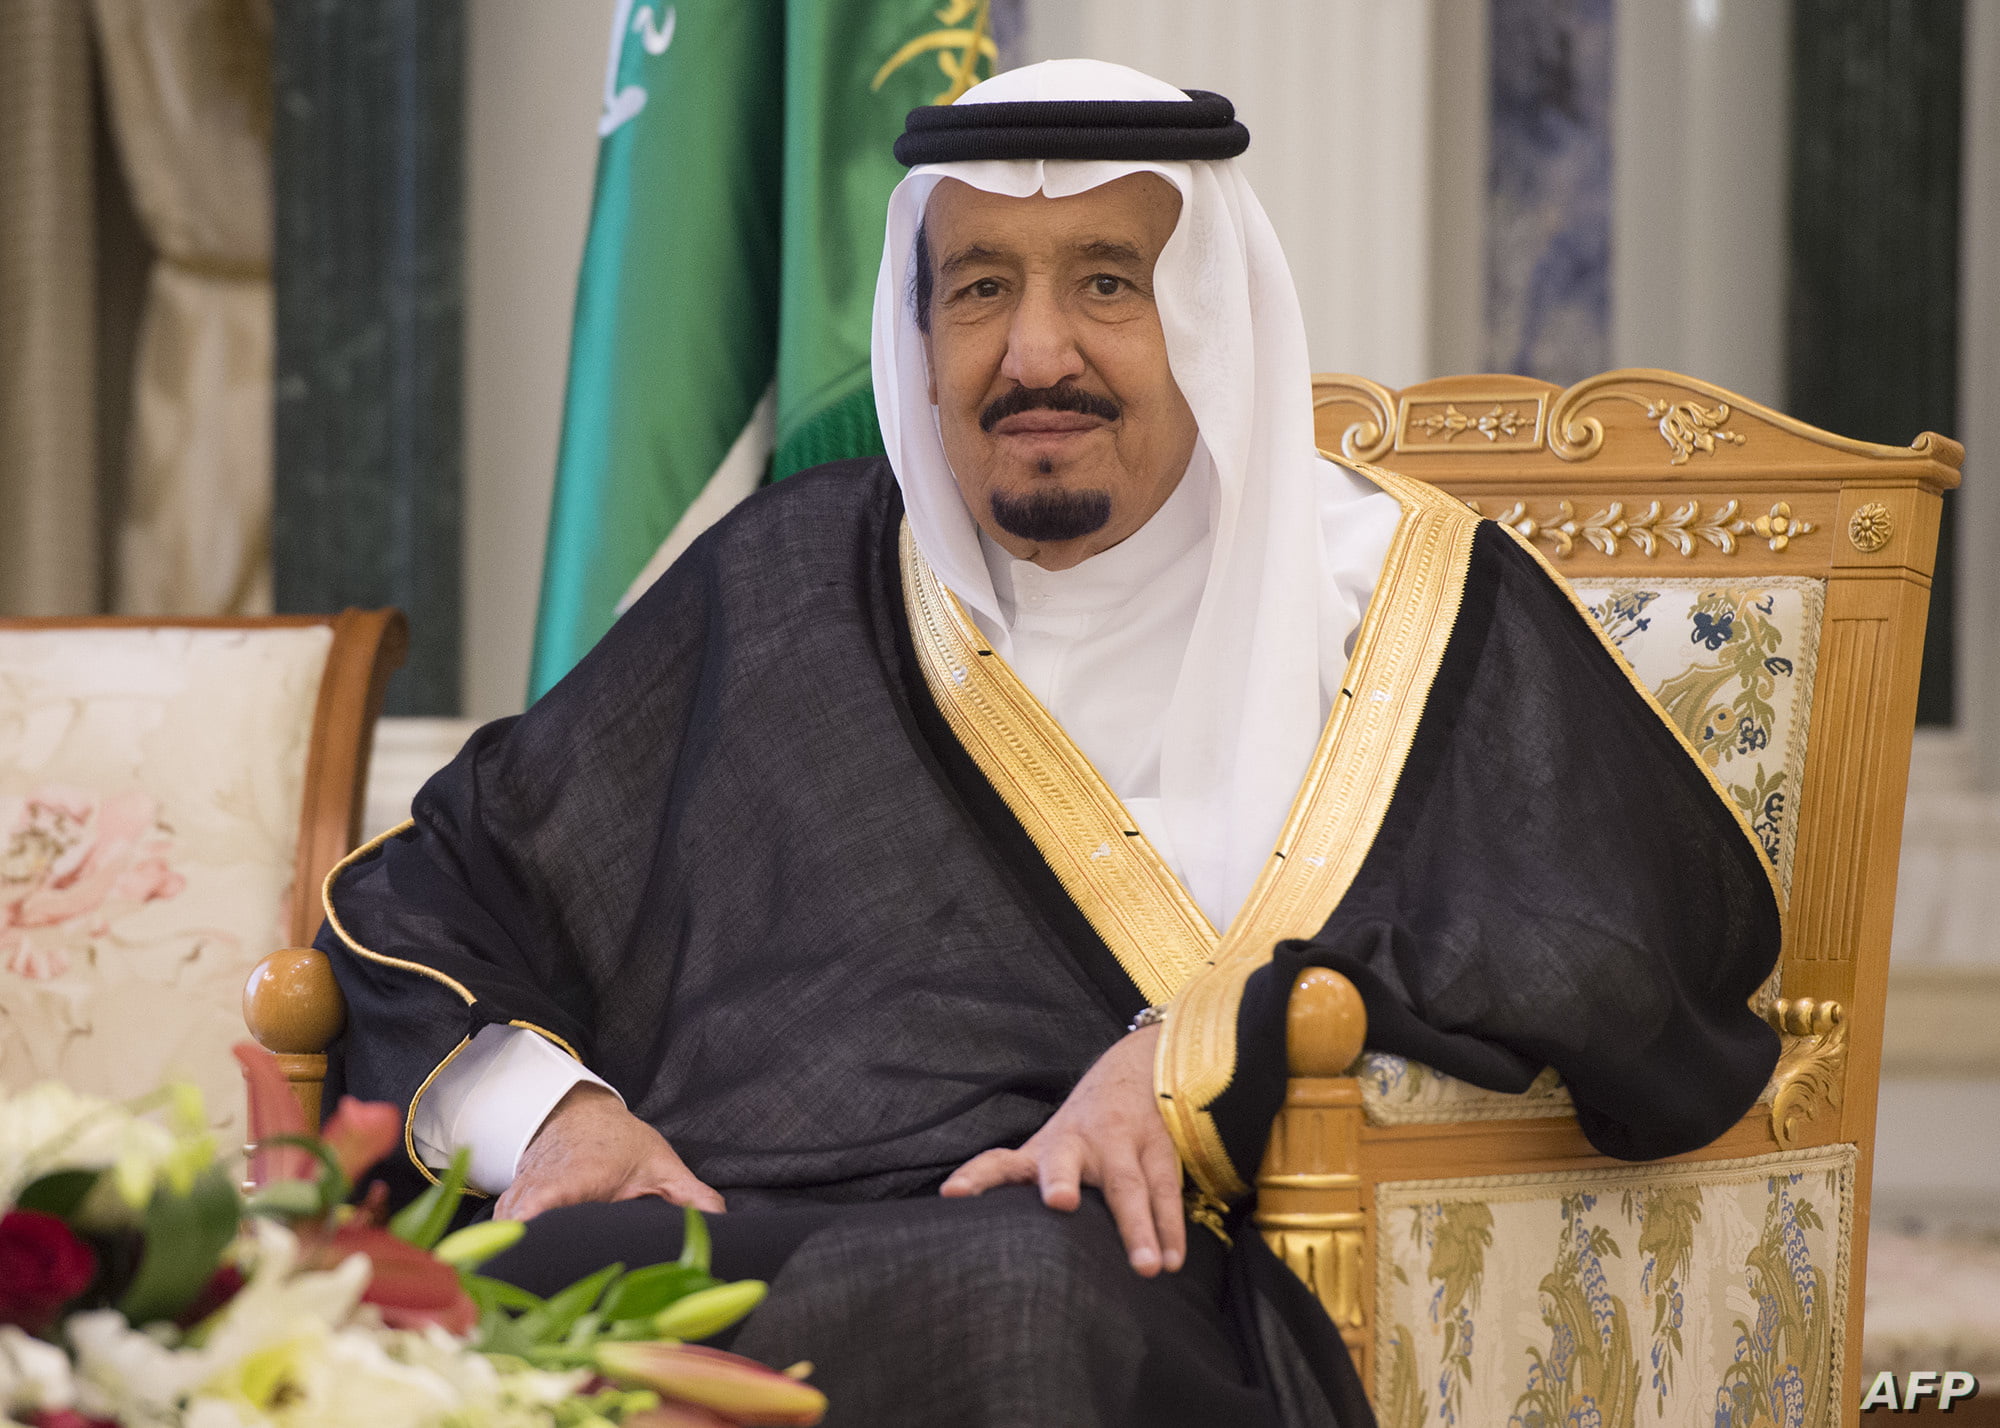 كم عمر الملك سلمان بن عبد العزيز آل سعود